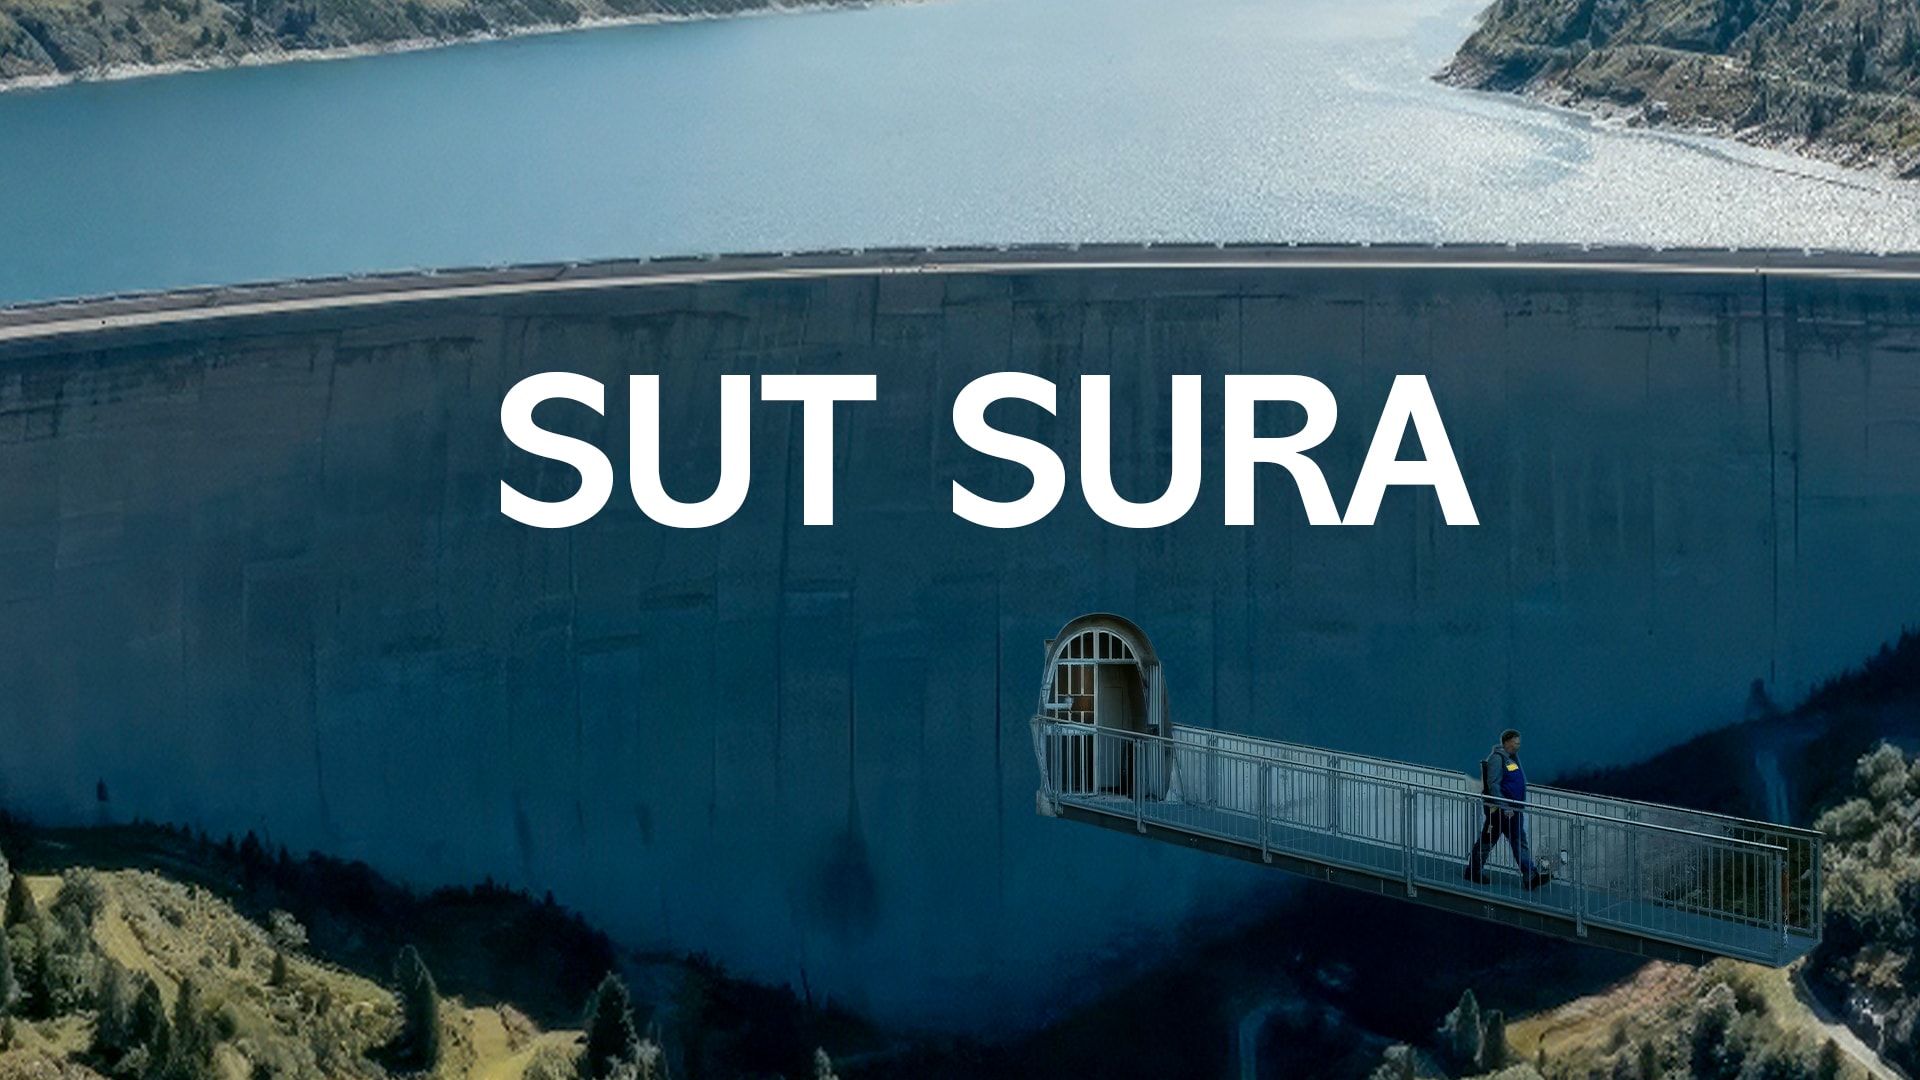 Sut Sura